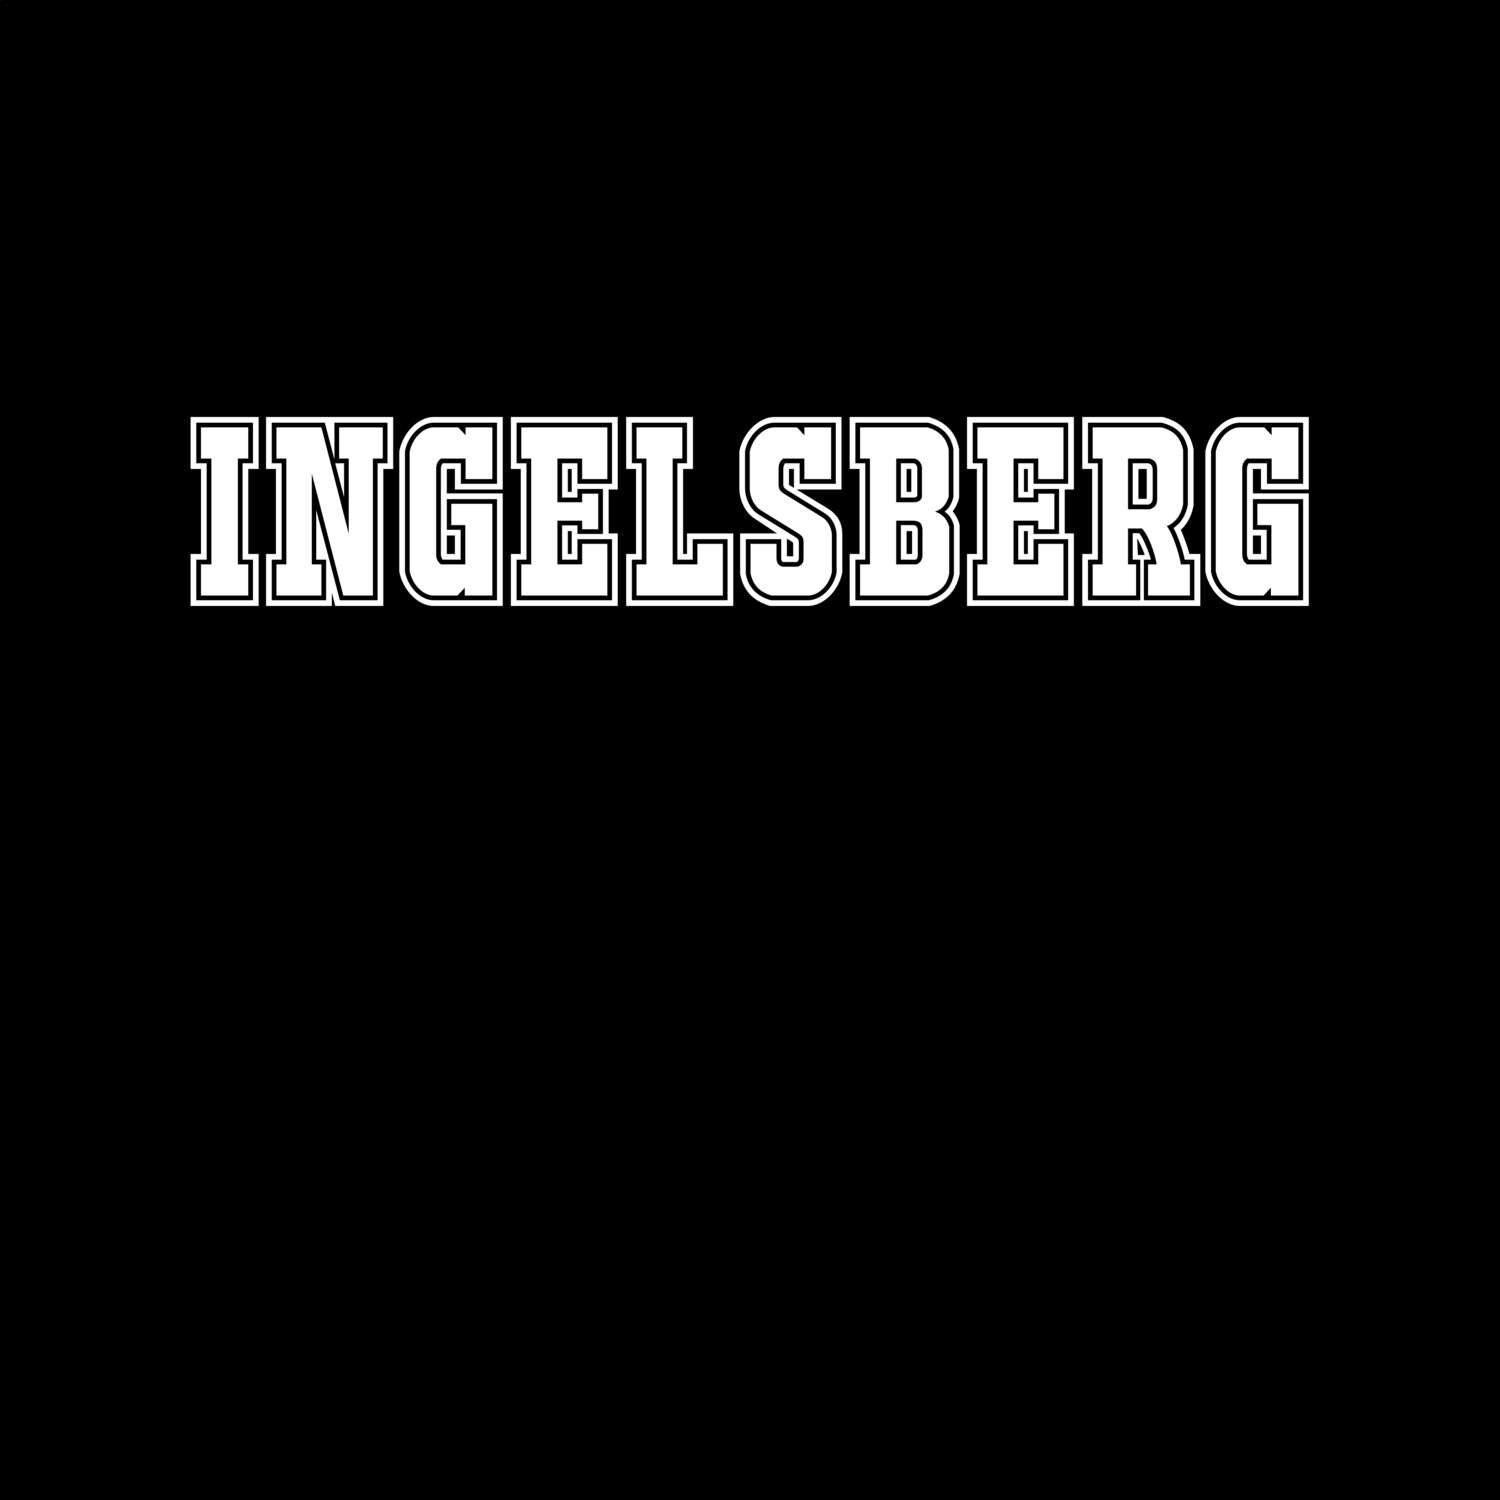 Ingelsberg T-Shirt »Classic«